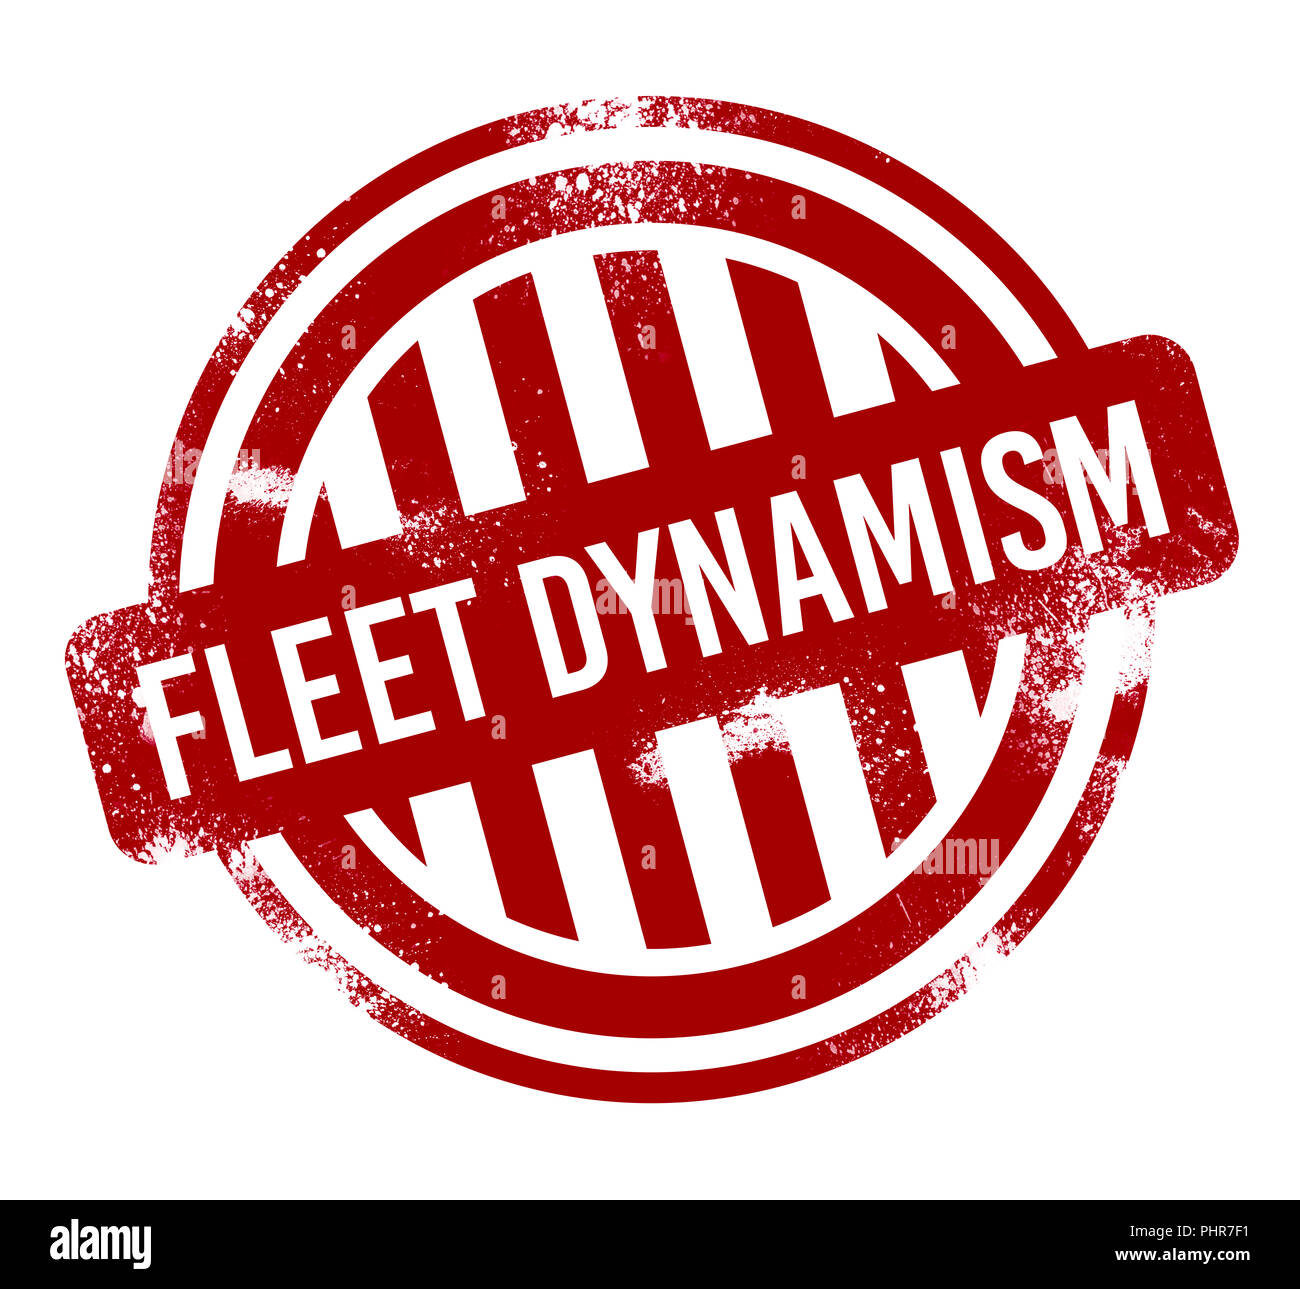 Fleet Dynamism - red grunge button, stamp Stock Photo